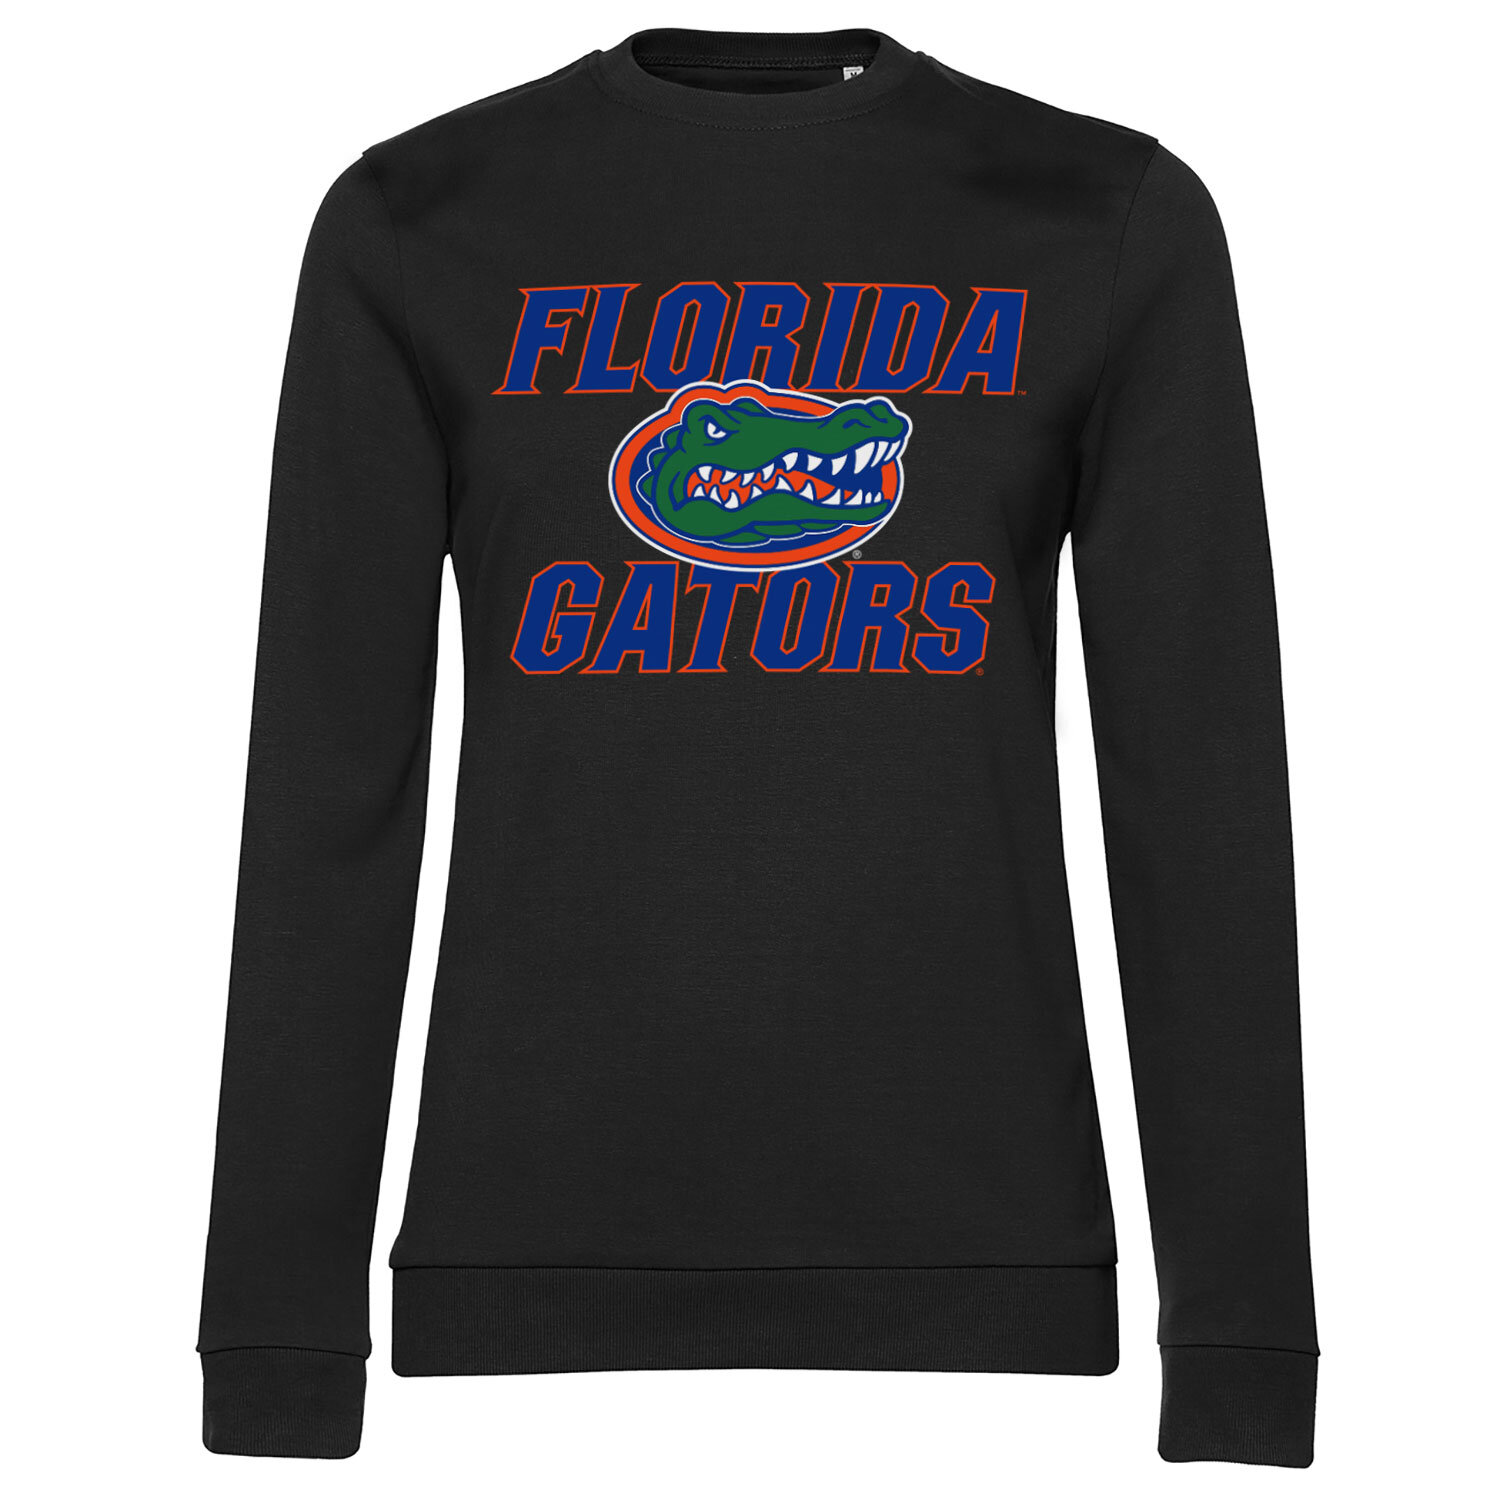 Florida Gators Girly Sweatshirt